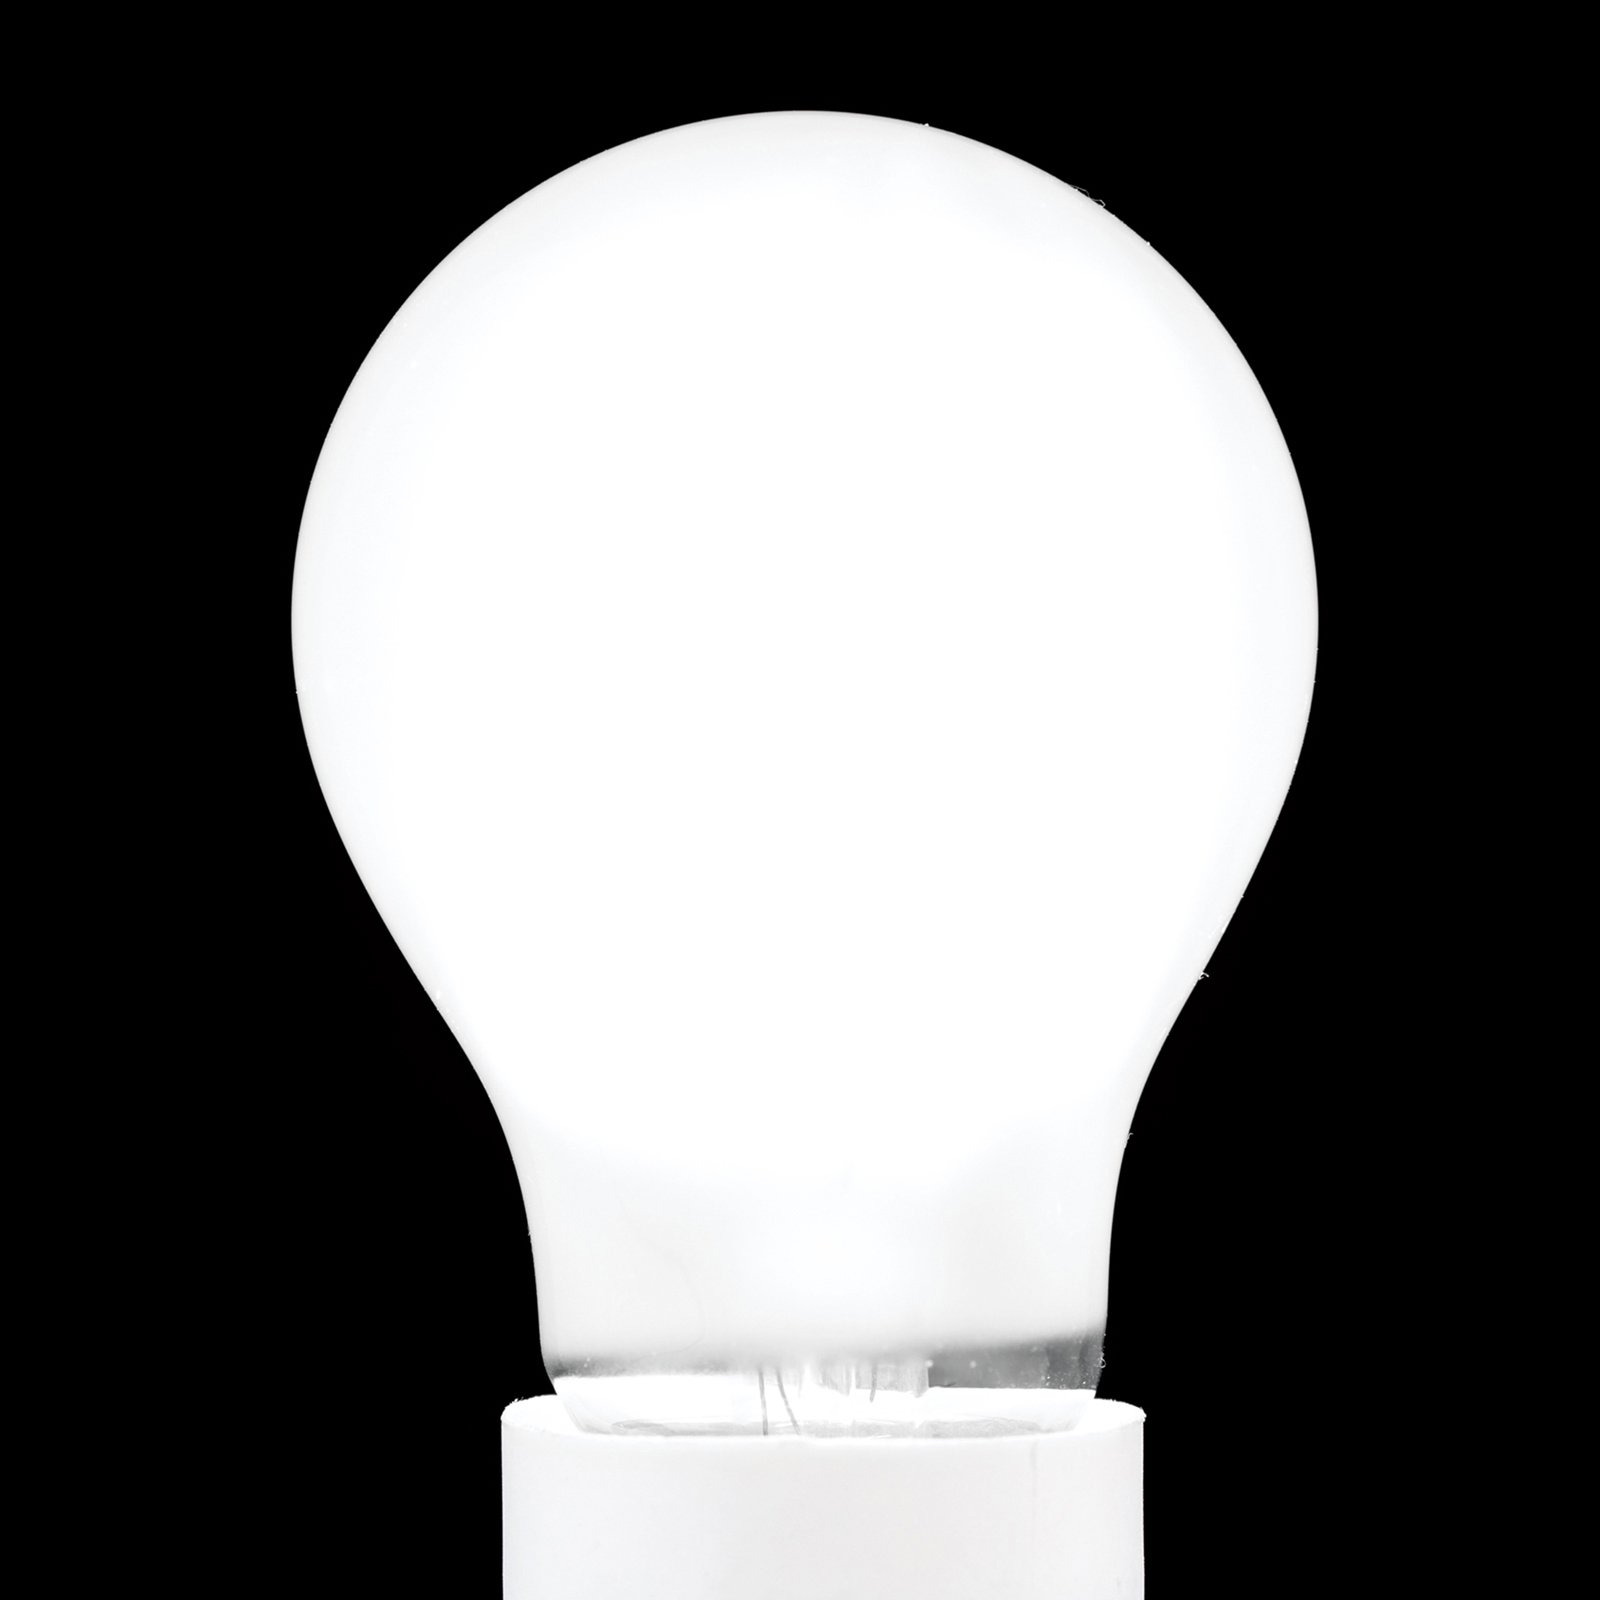 LED žiarovka E27 4,5W 2 700K matná stmievateľná